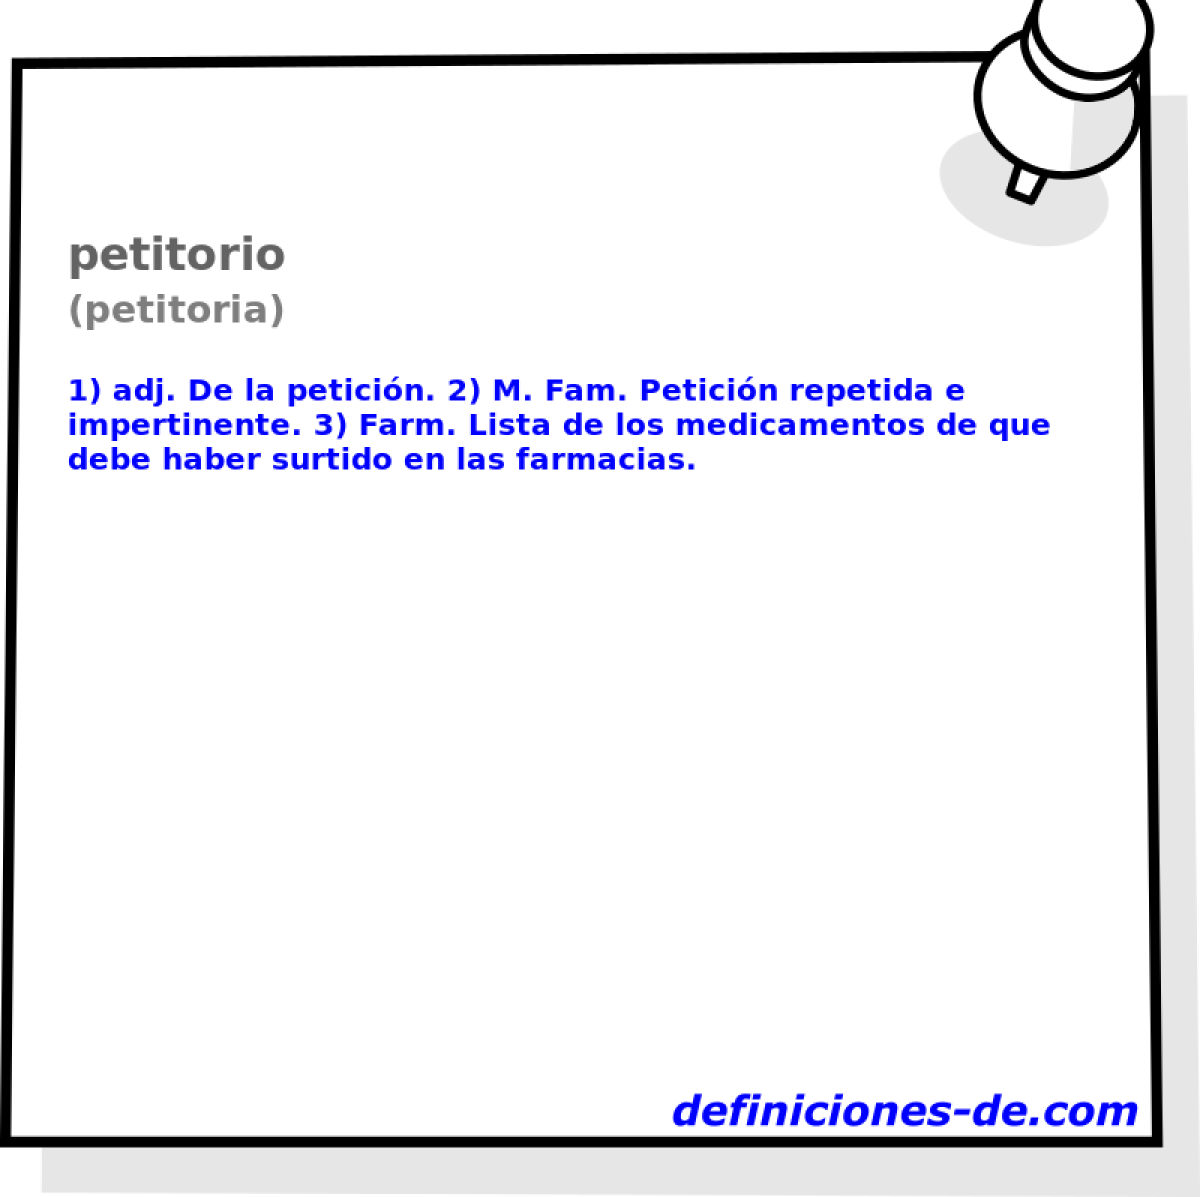 petitorio (petitoria)